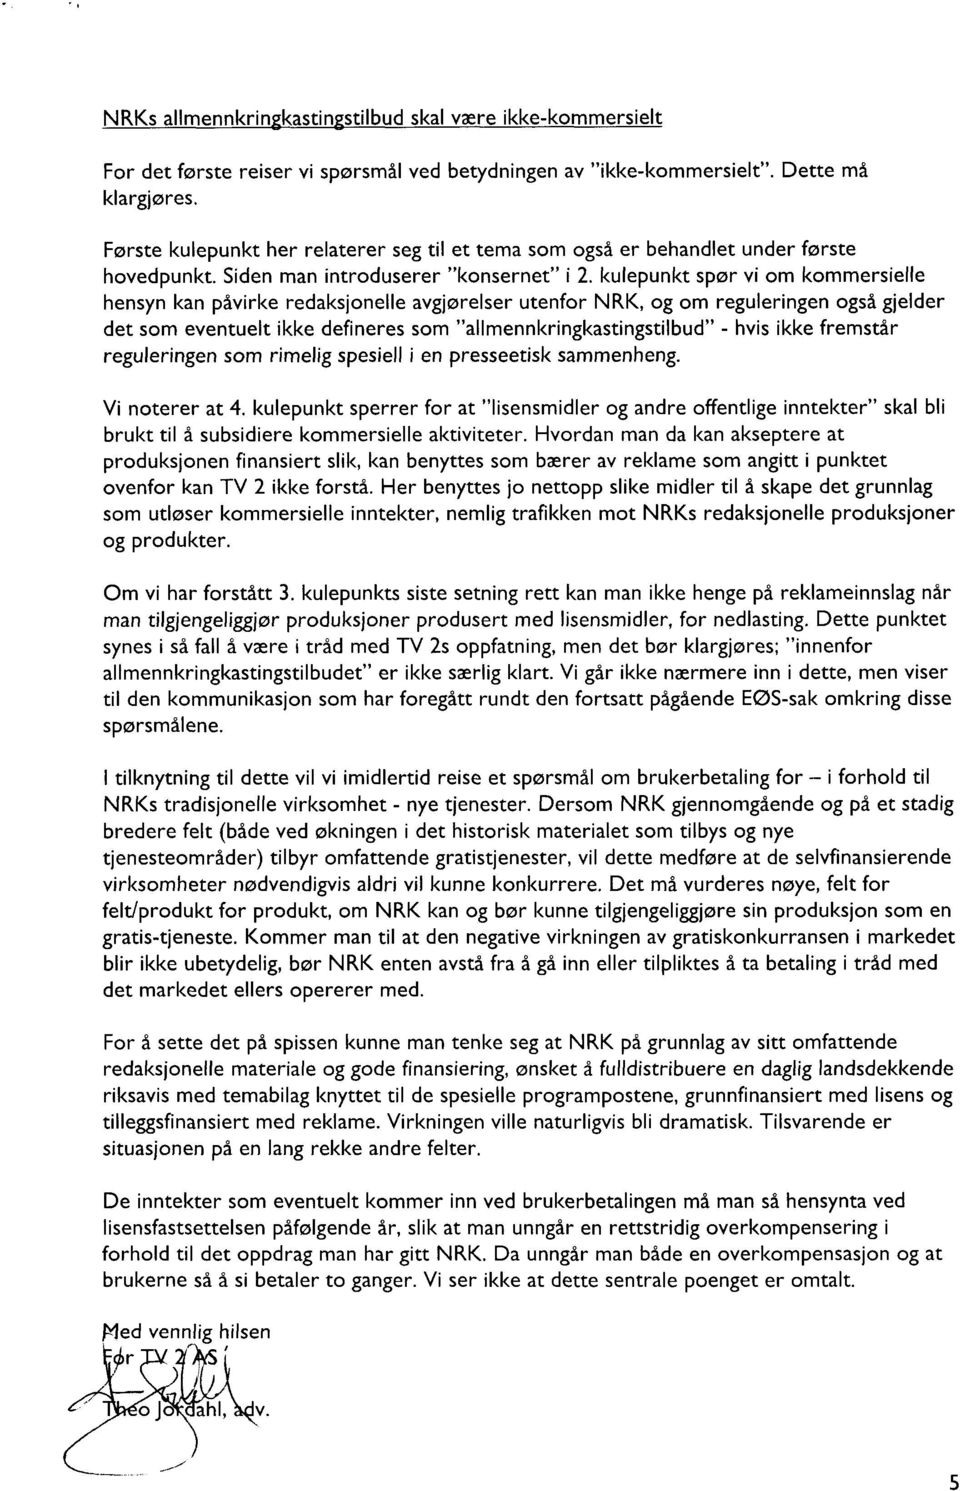 kulepunkt spør vi om kommersielle hensyn kan påvirke redaksjonelle avgjørelser utenfor NRK, og om reguleringen også gjelder det som eventuelt ikke defineres som "allmennkringkastingstilbud" - hvis